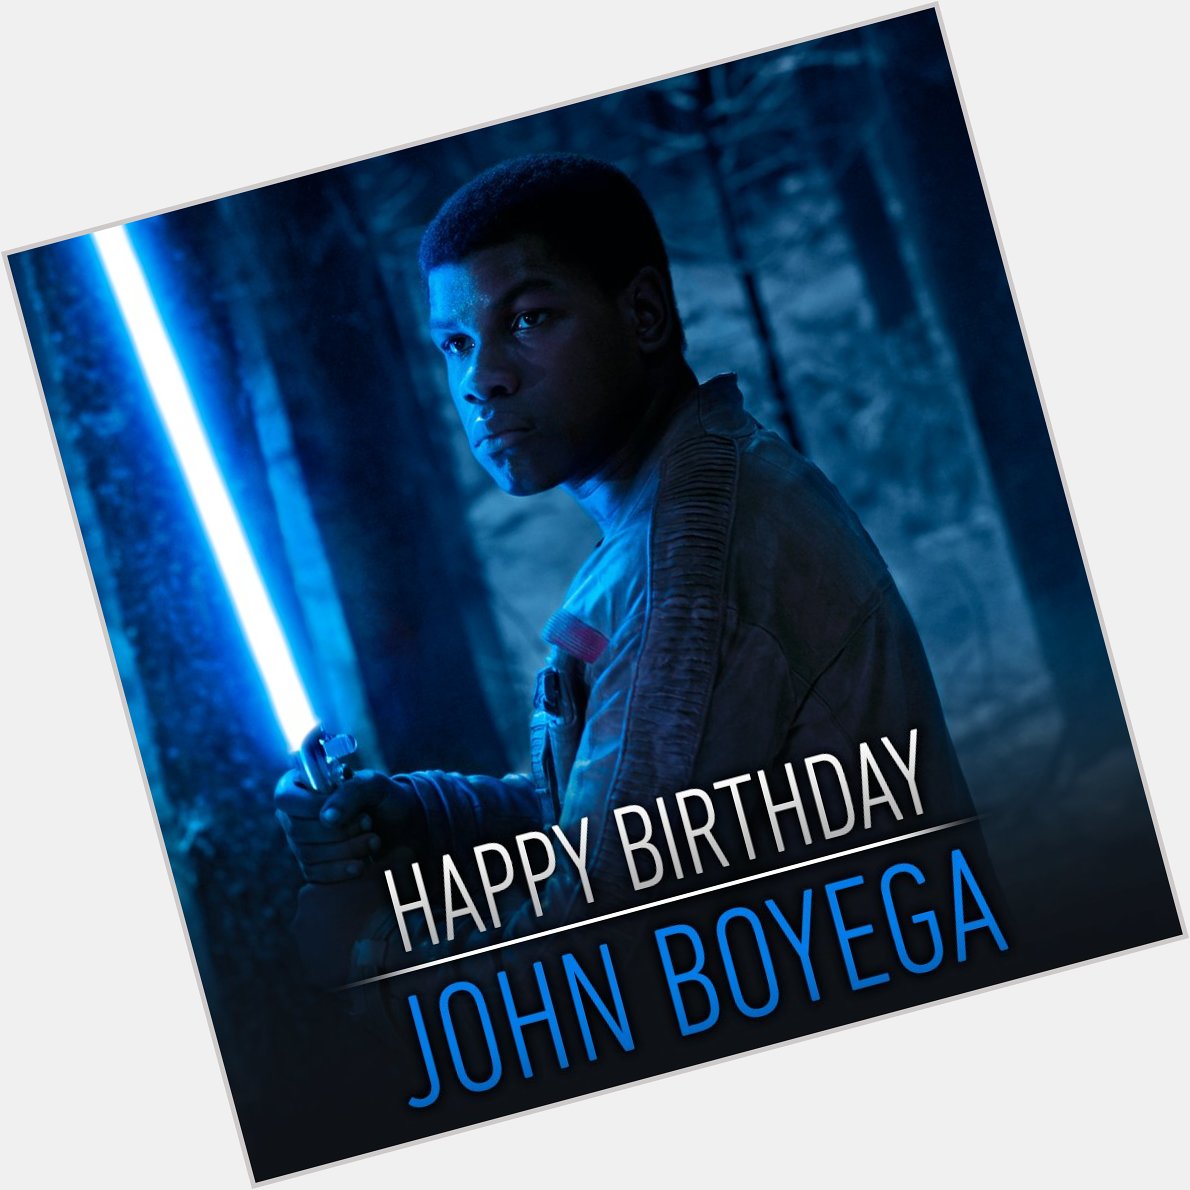 Happy birthday John Boyega AKA Finn AKA FN-2187 AKA Big Deal AKA Traitor... 